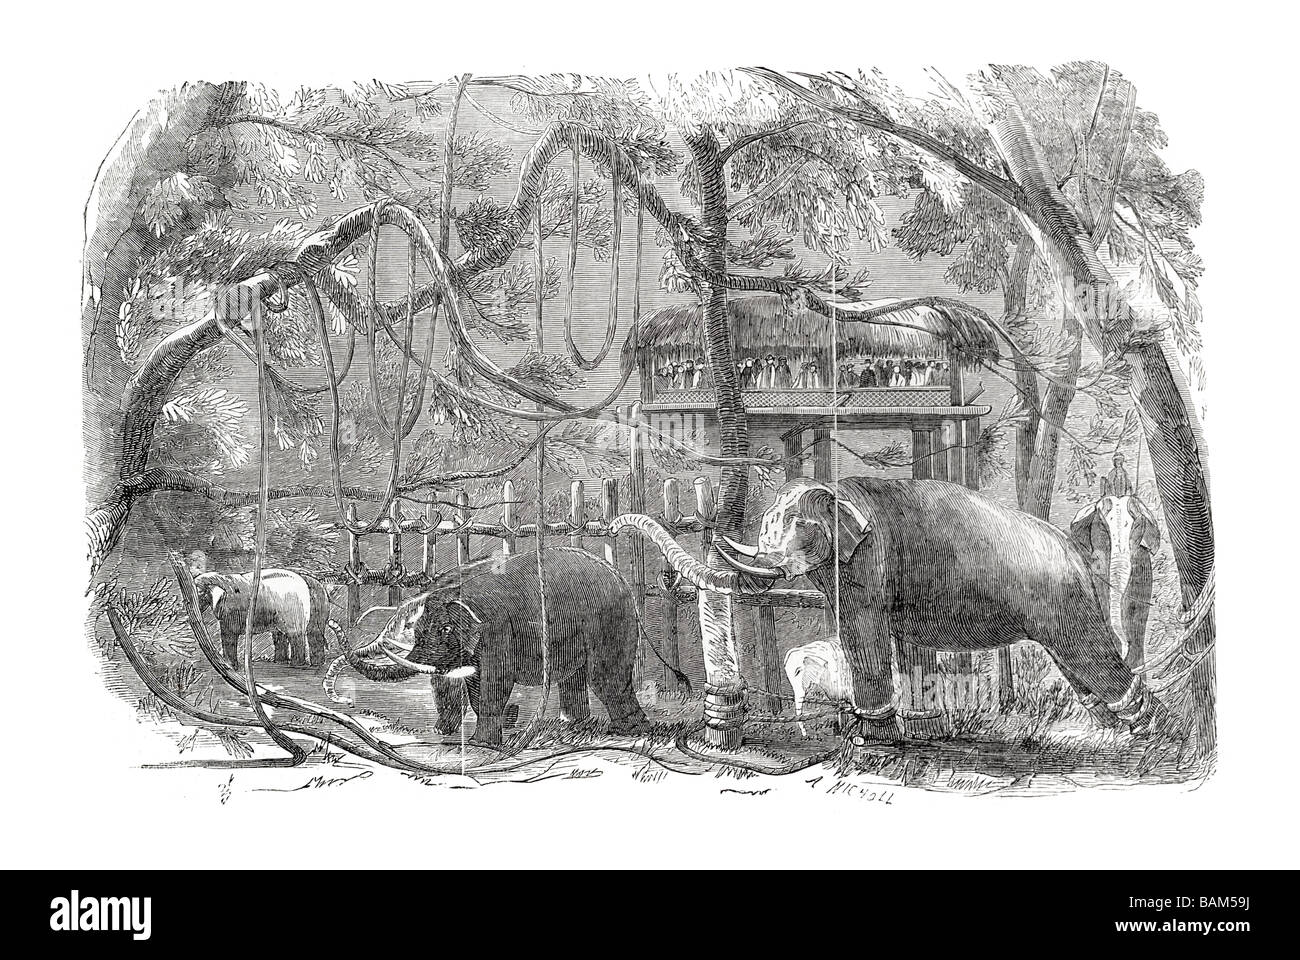 Île de Ceylan kraal éléphant apprivoisé sauvage éduqué enceinte penn en captivité des animaux de la jungle asiatique forêt tusk Banque D'Images